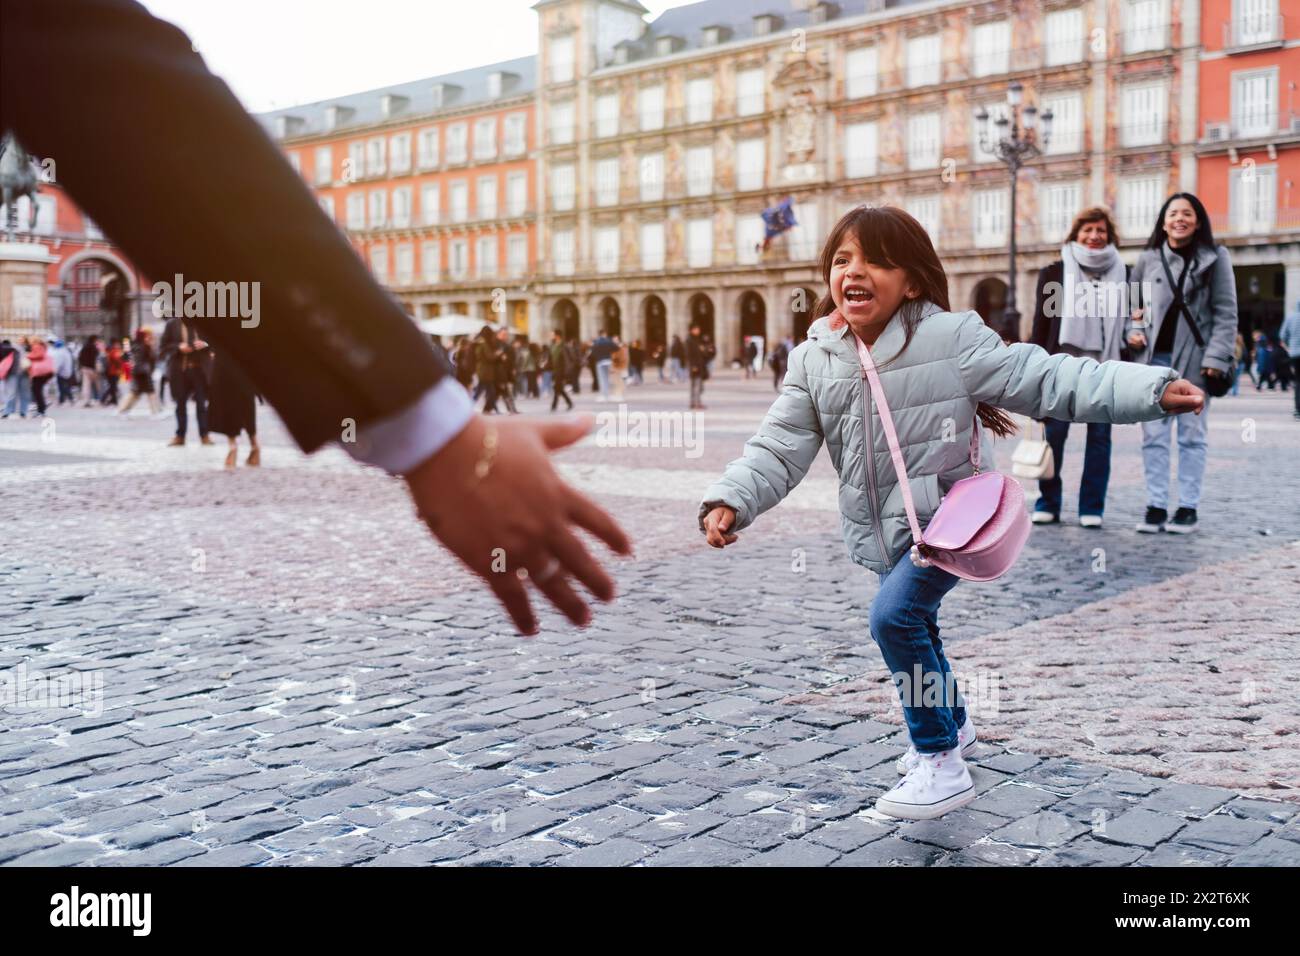 Jeune fille joyeuse courant vers son père sur la place de la ville Banque D'Images